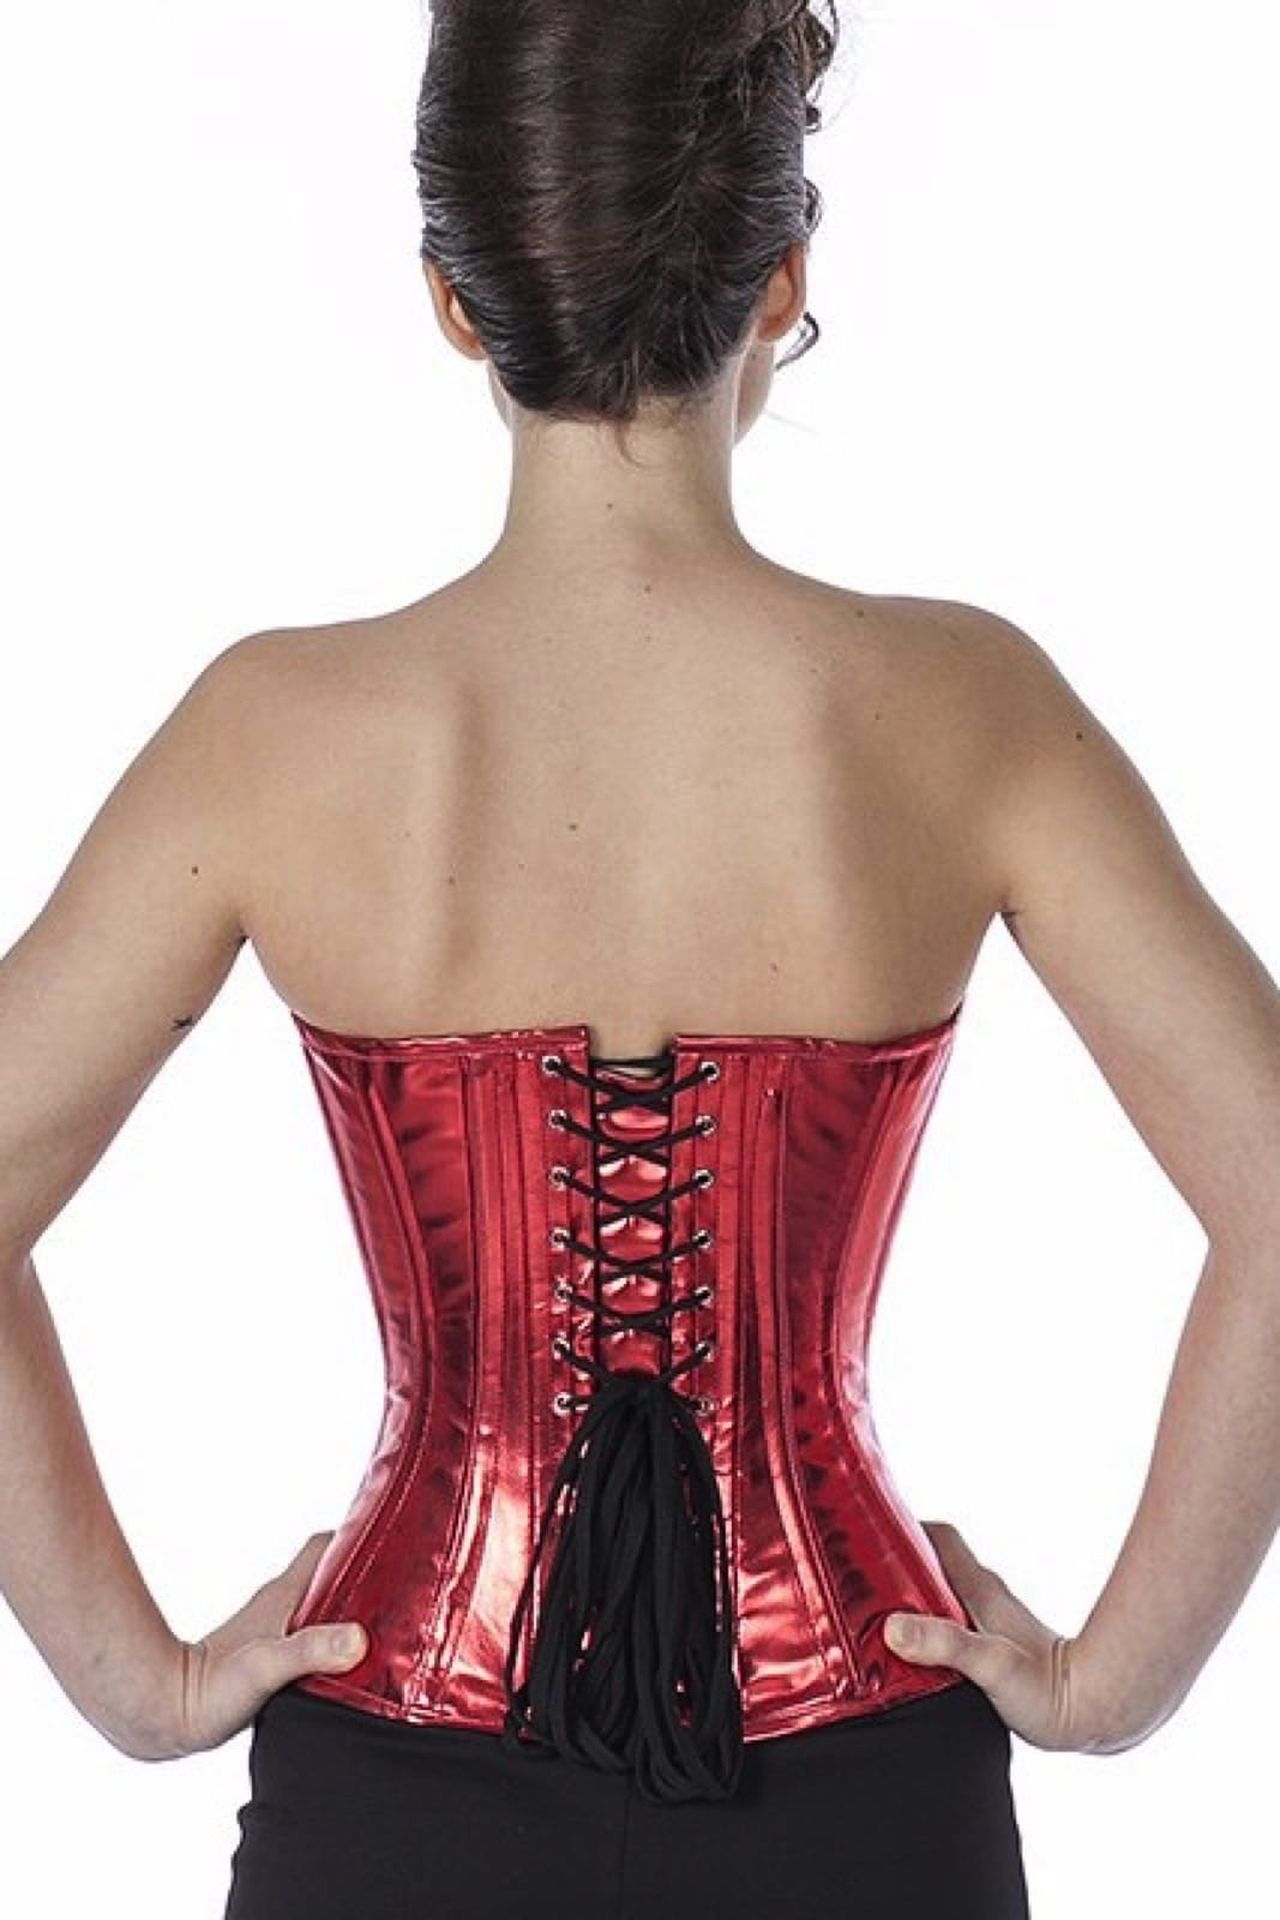 Corse rojo glitter charol medio pecho corset phG1